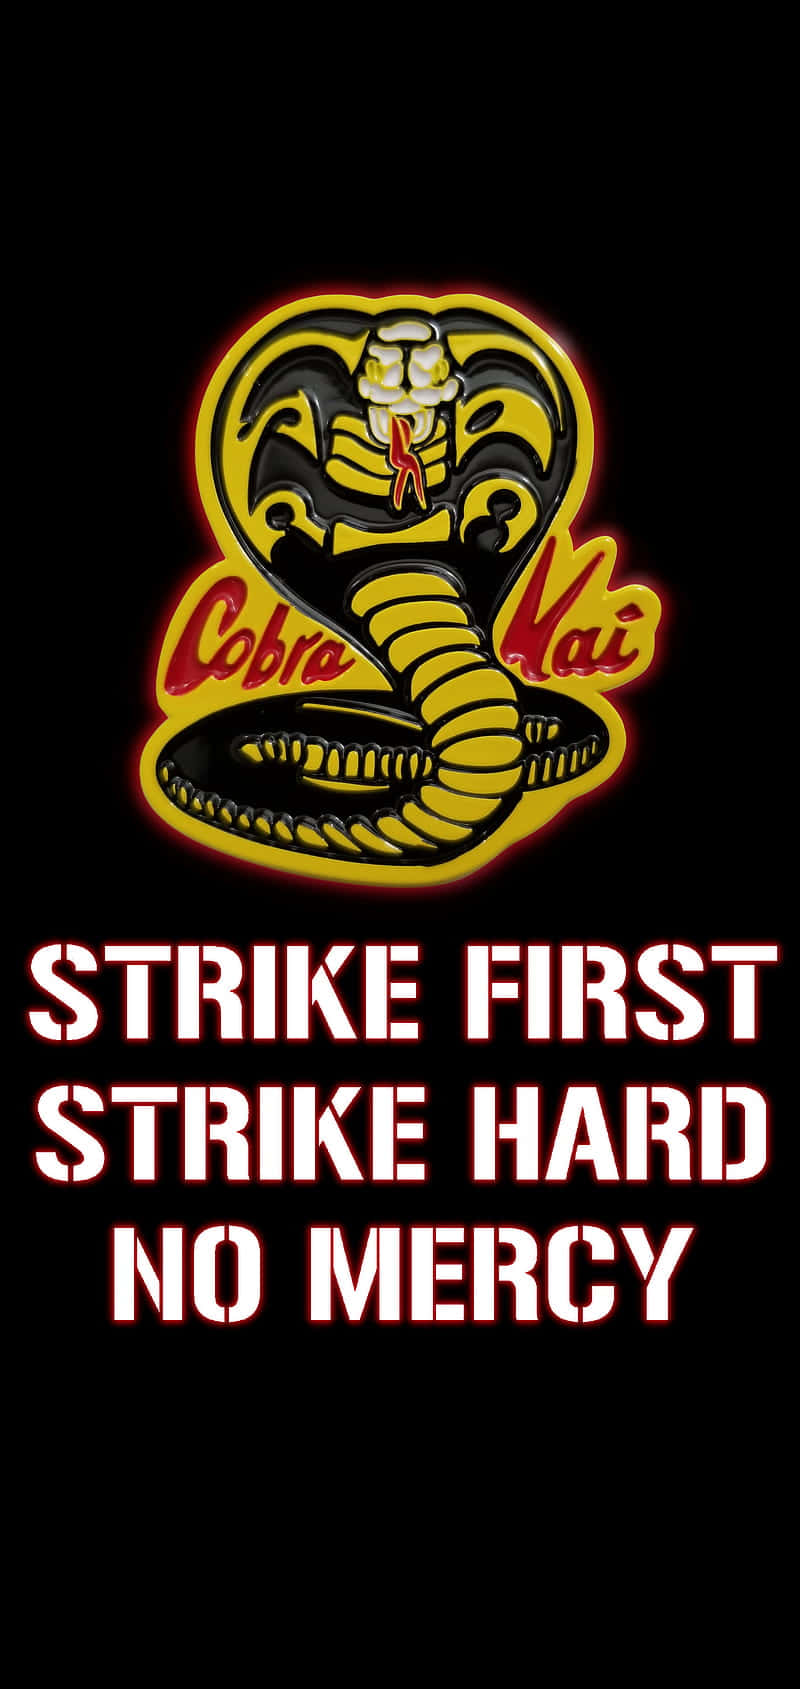 Tag med din kærlighed til Cobra Kai overalt - download denne officielle wallpaper til din telefon.